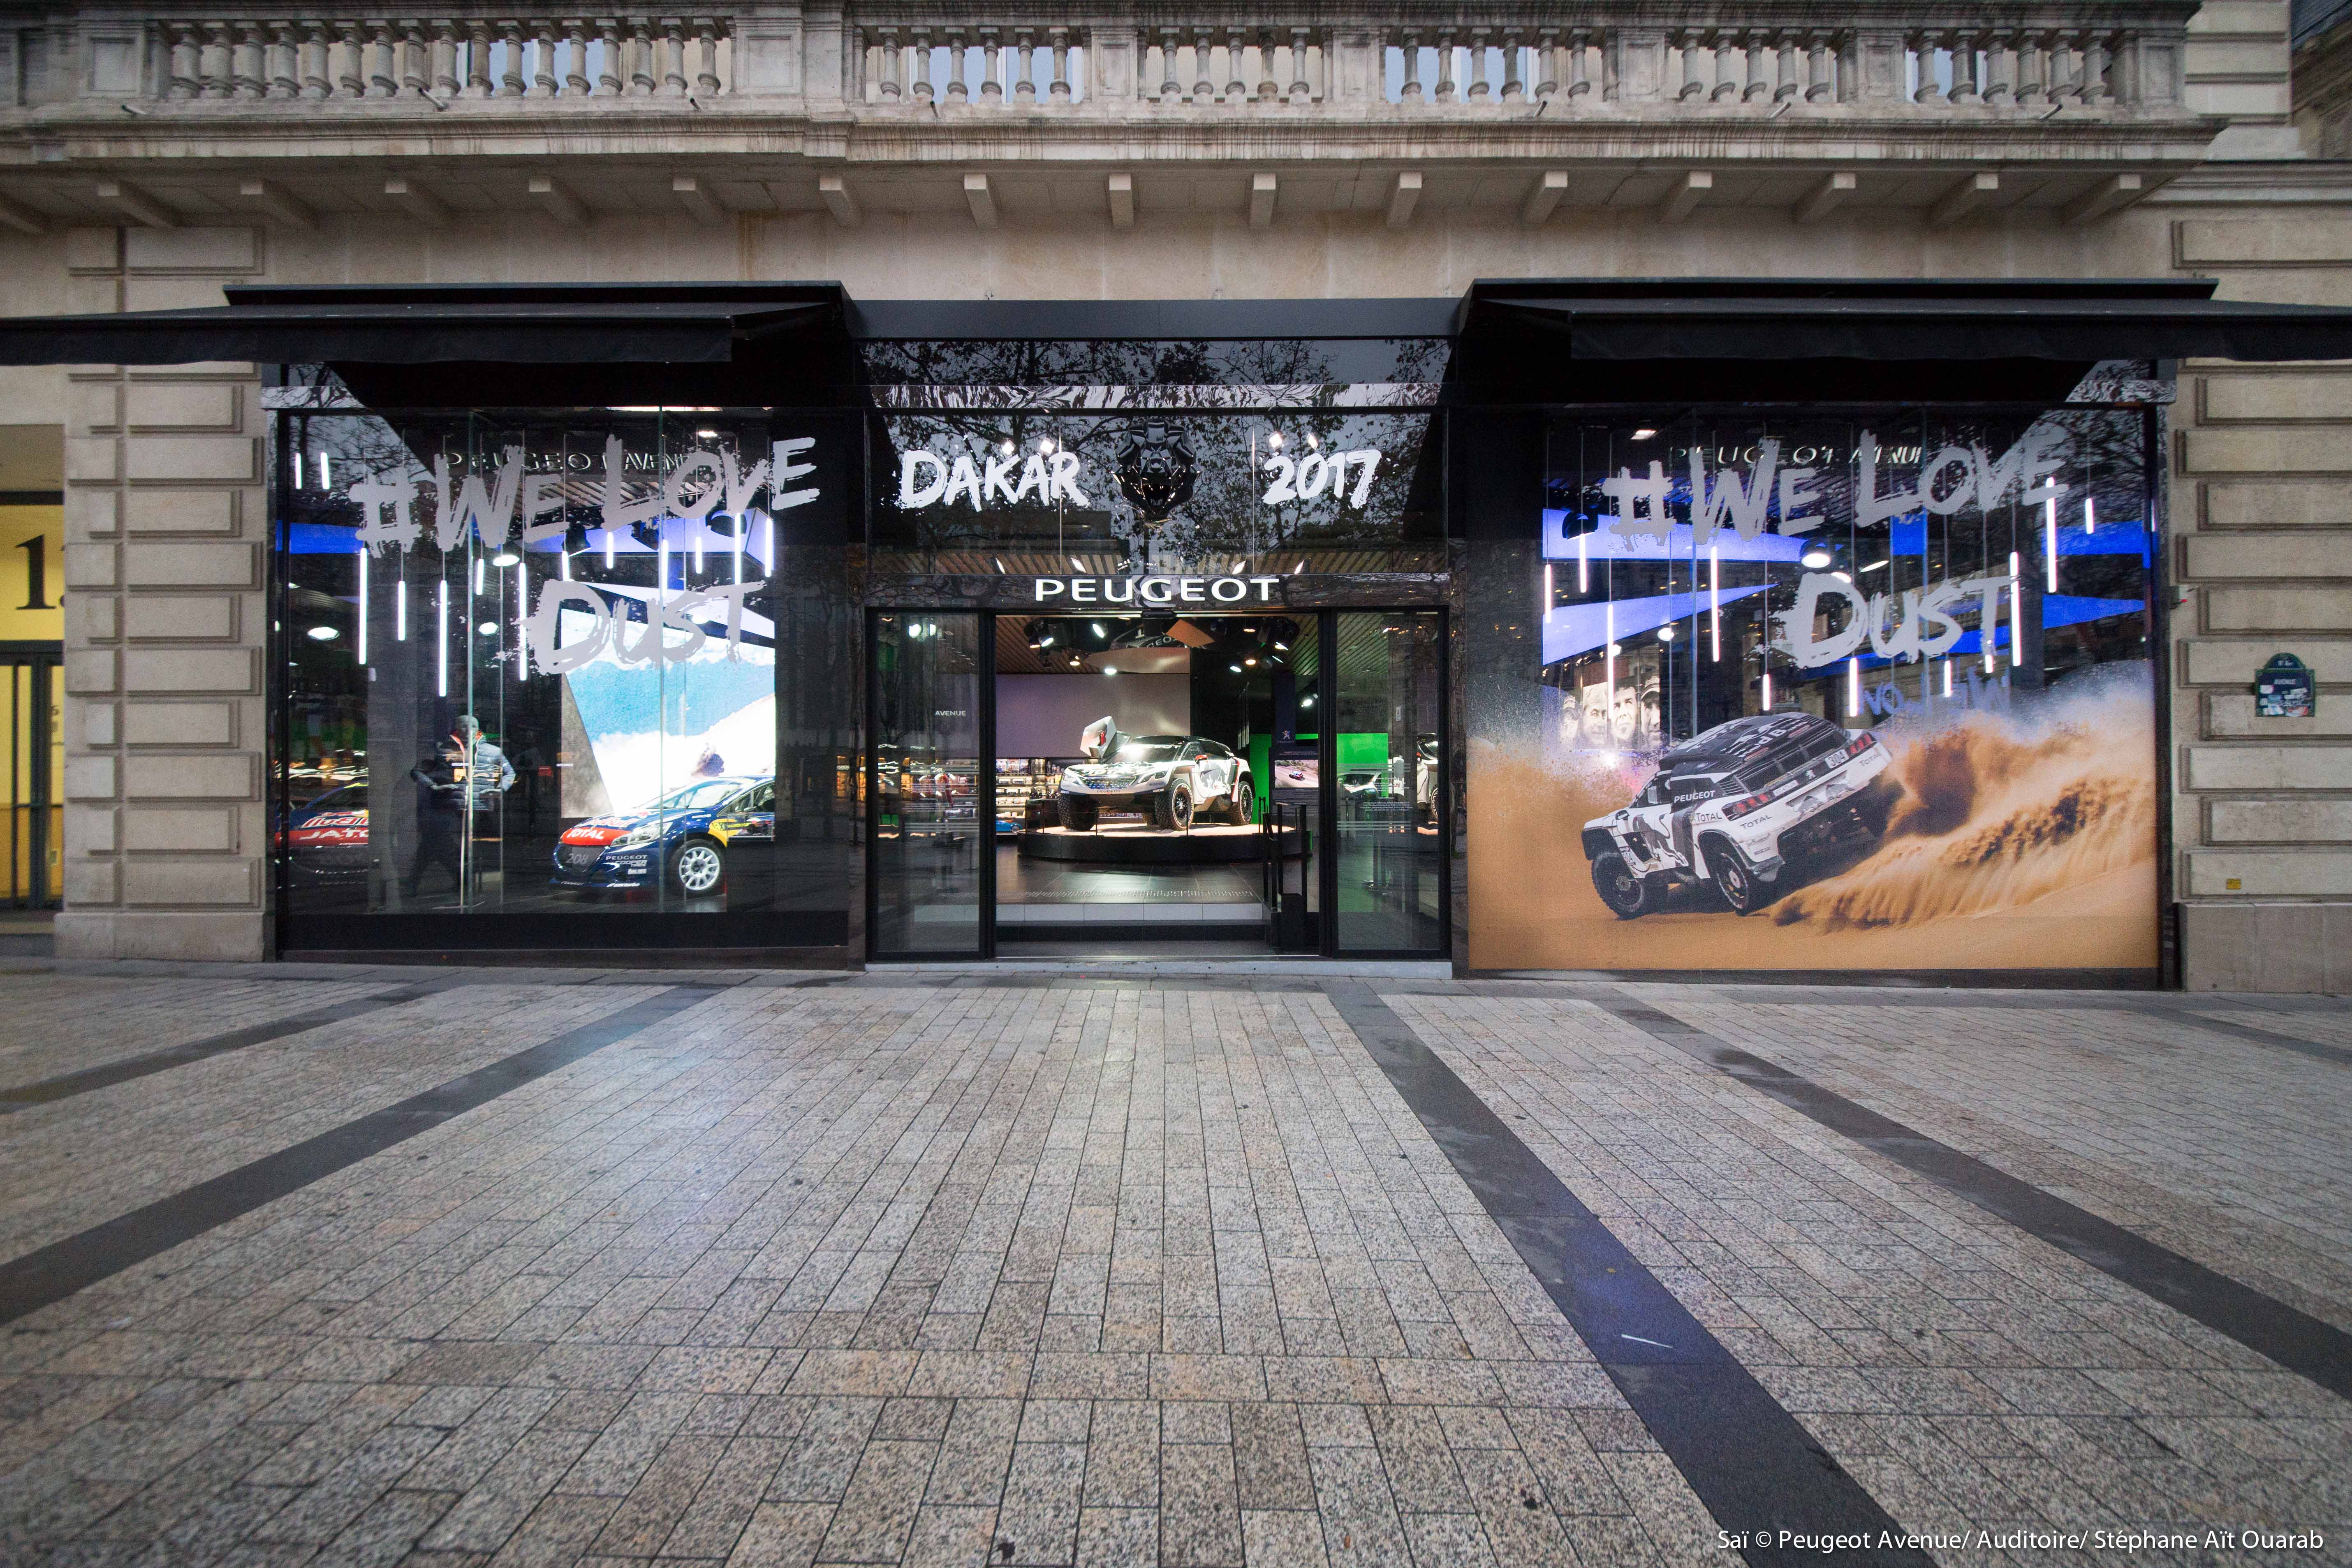 Peugeot Avenue Paris com exposição sobre o Dakar